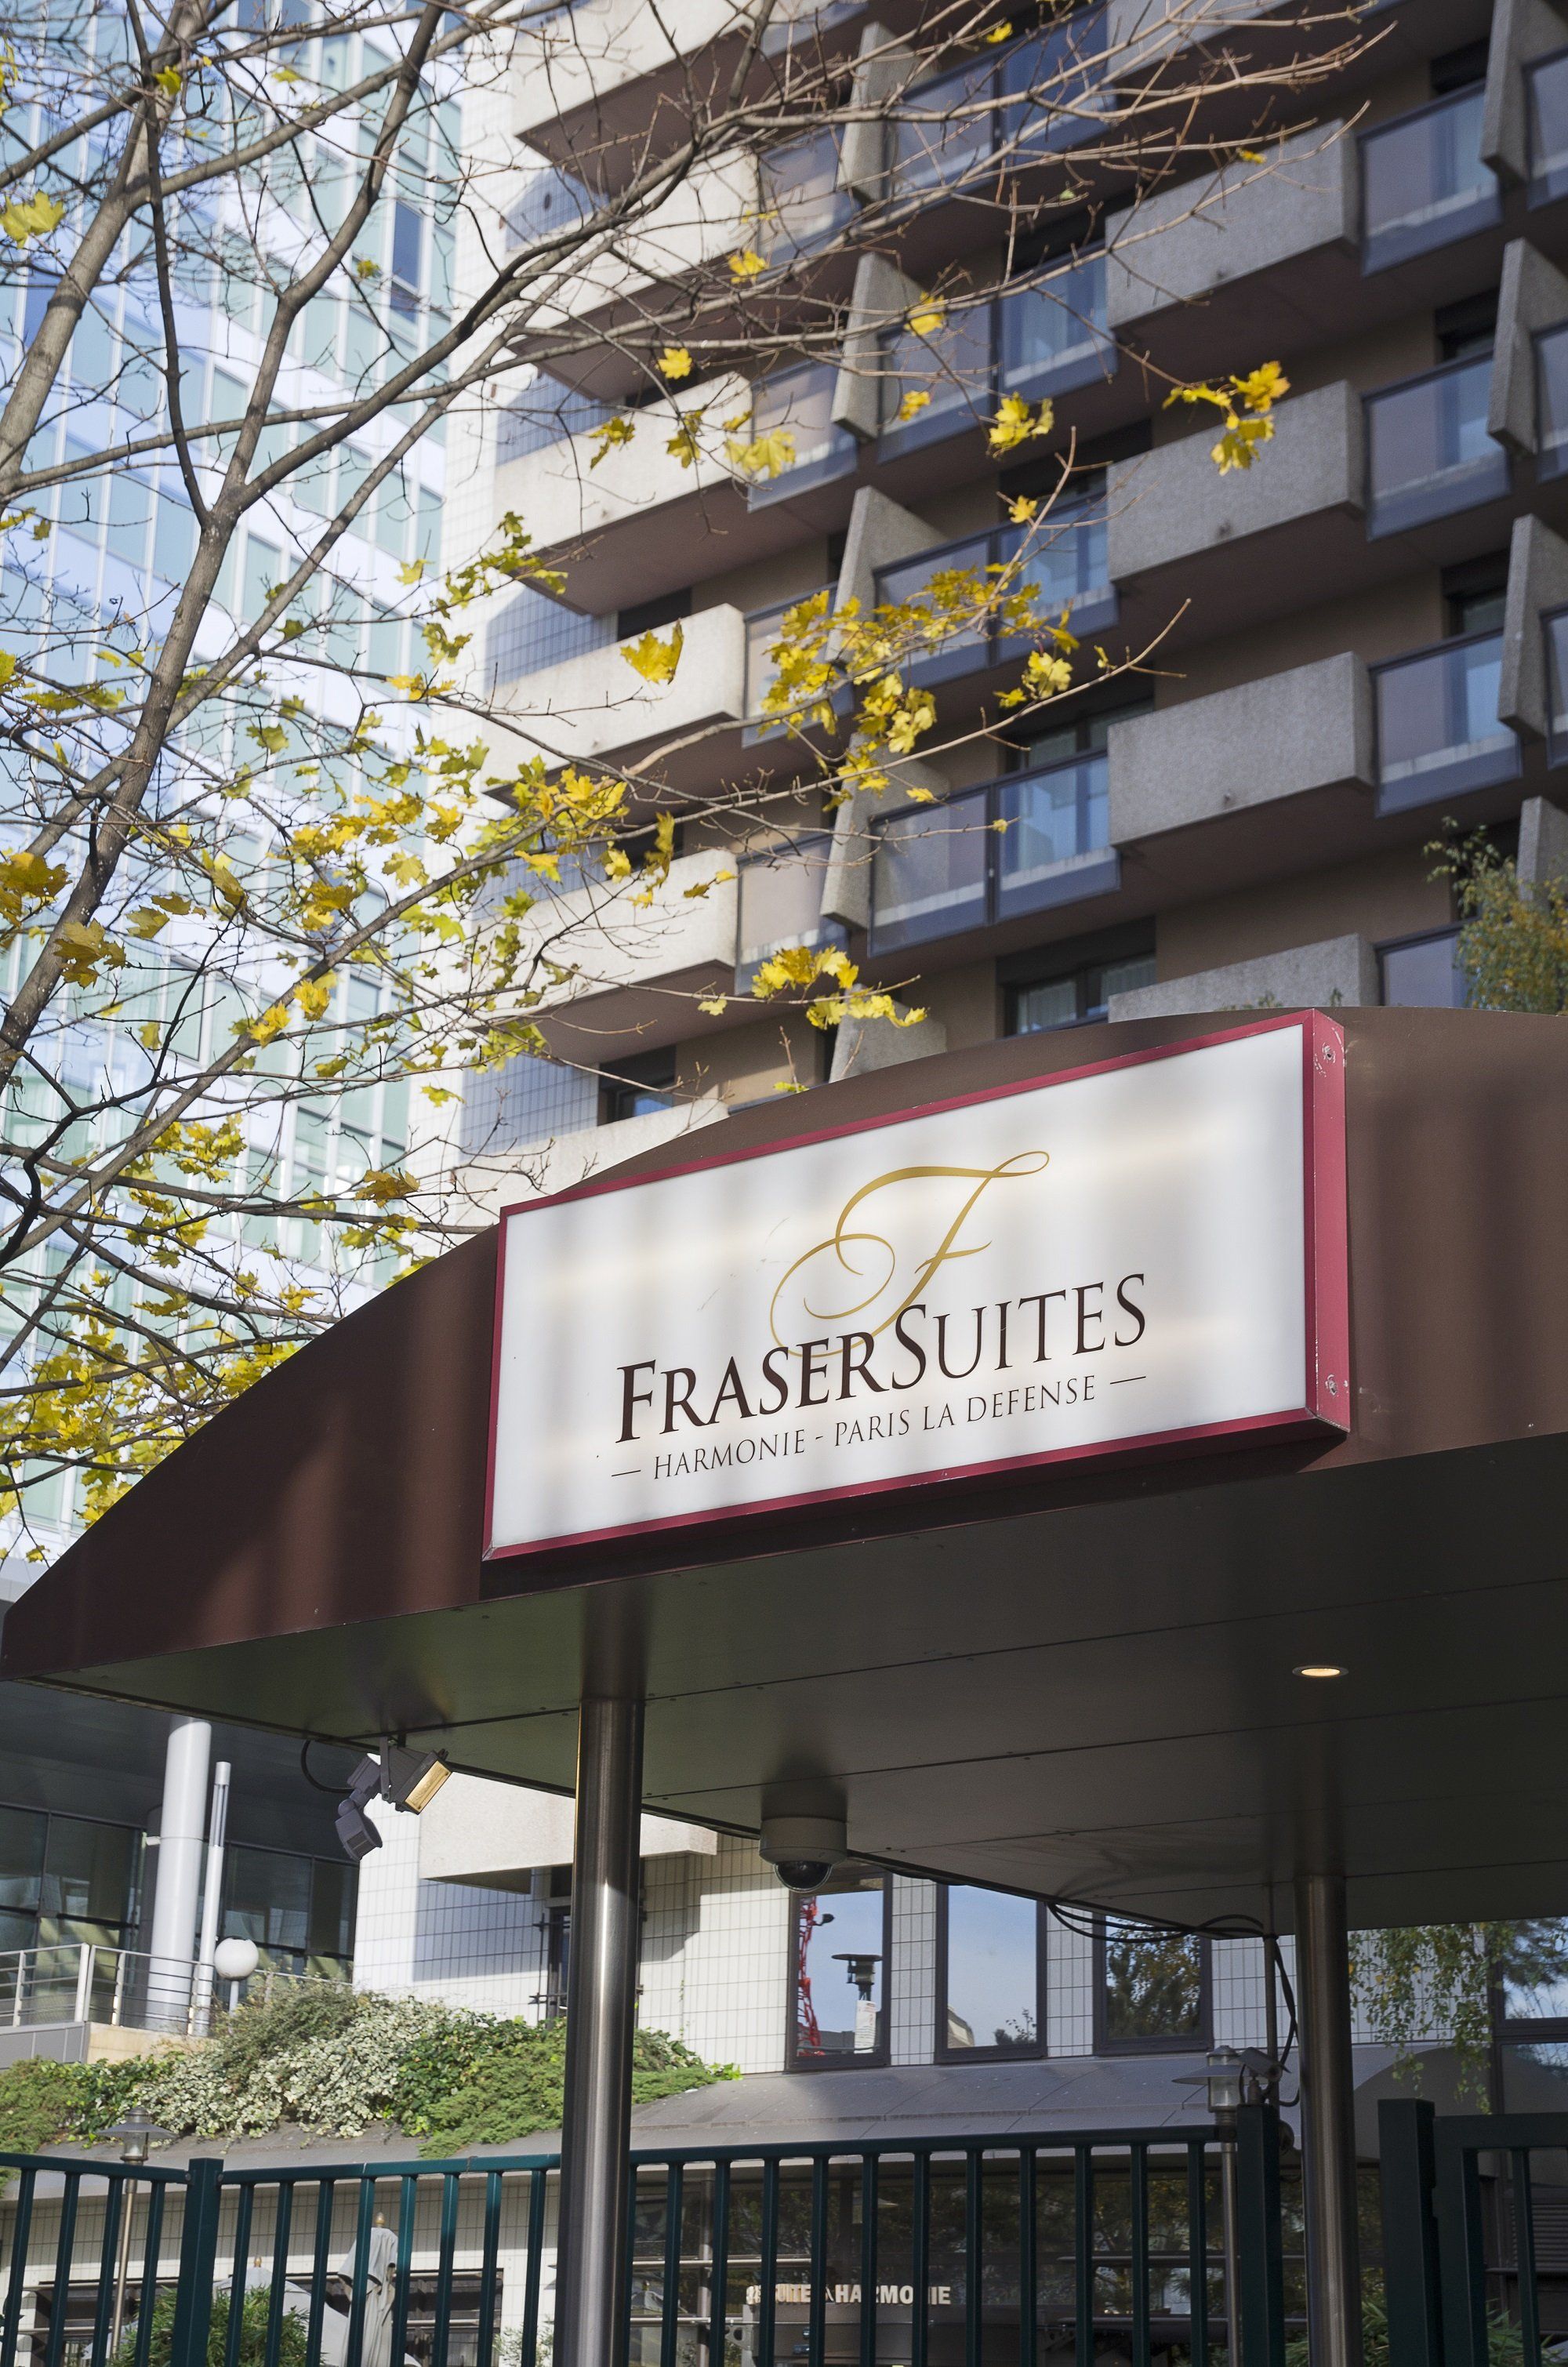 Hotel-wide refurb underway at Fraser Suites Sydney - Hotel Management